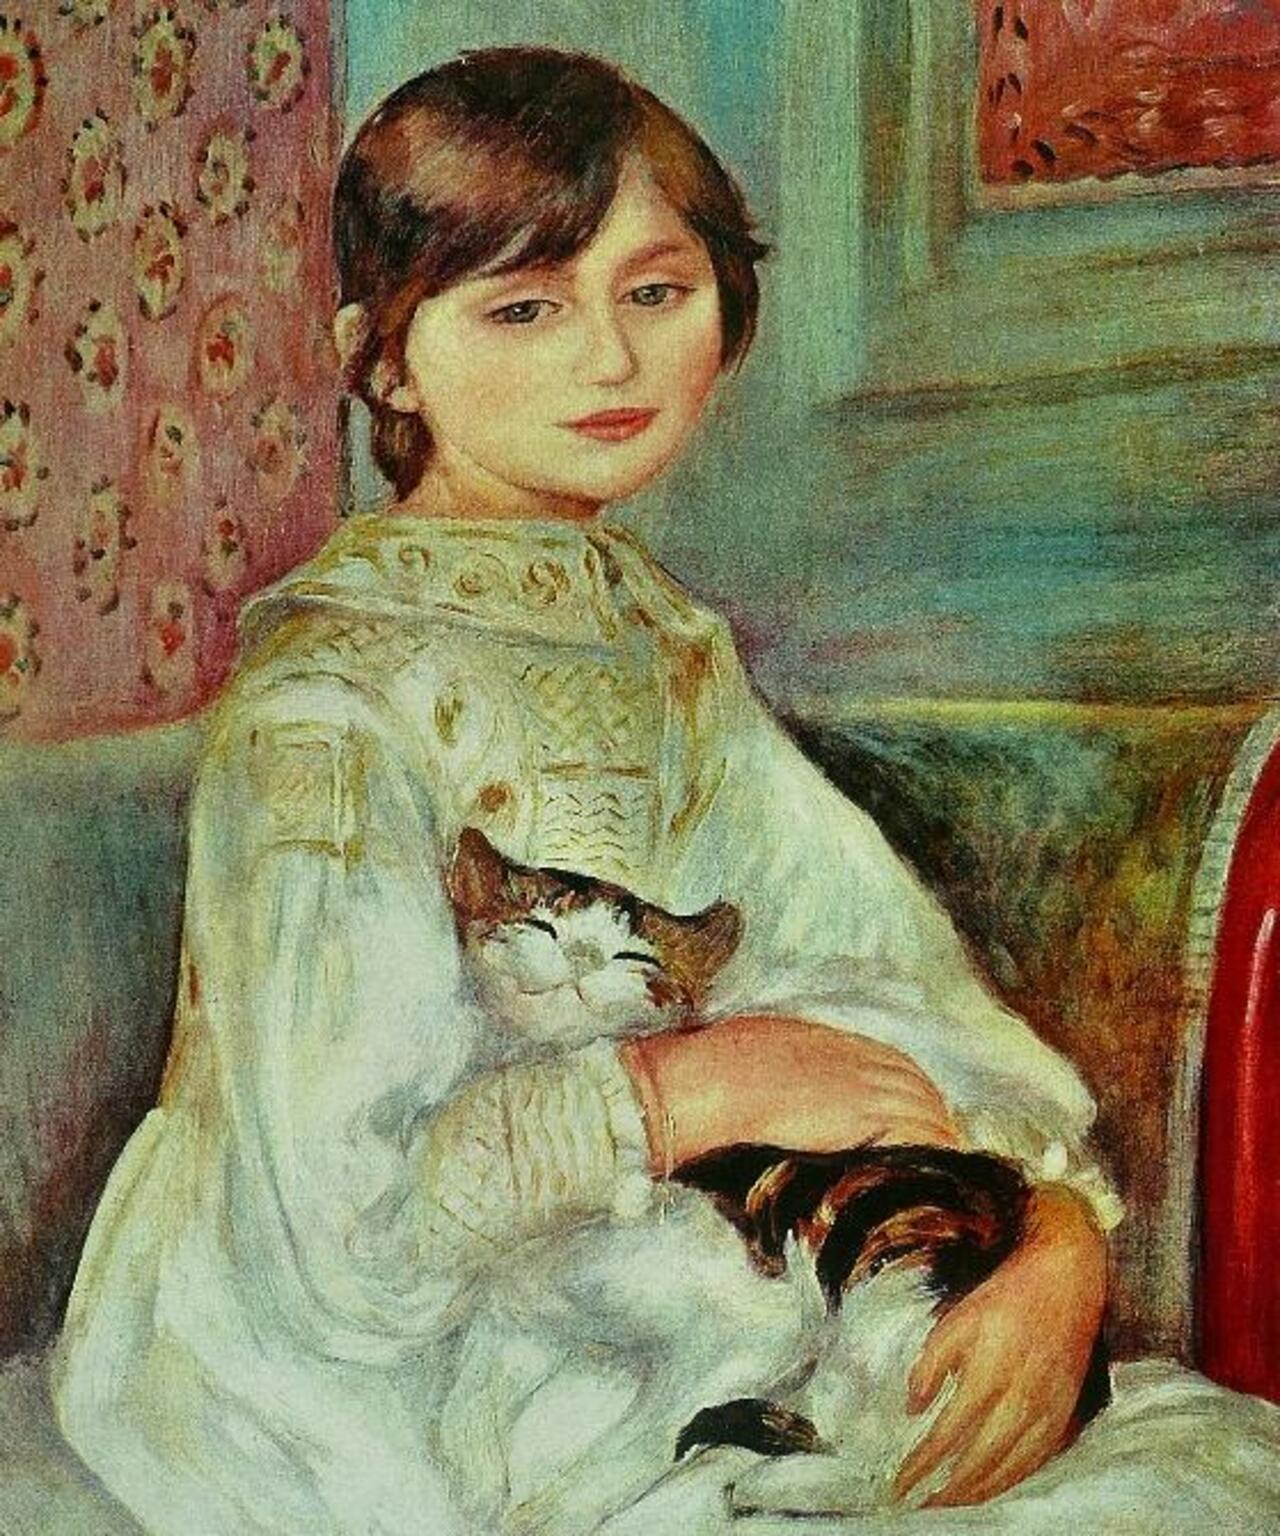 “@marisabeloyo: Pierre-Auguste Renoir ( 1841-1919 )

'Julie Manet'
#art http://t.co/FsTcUjOEGi”